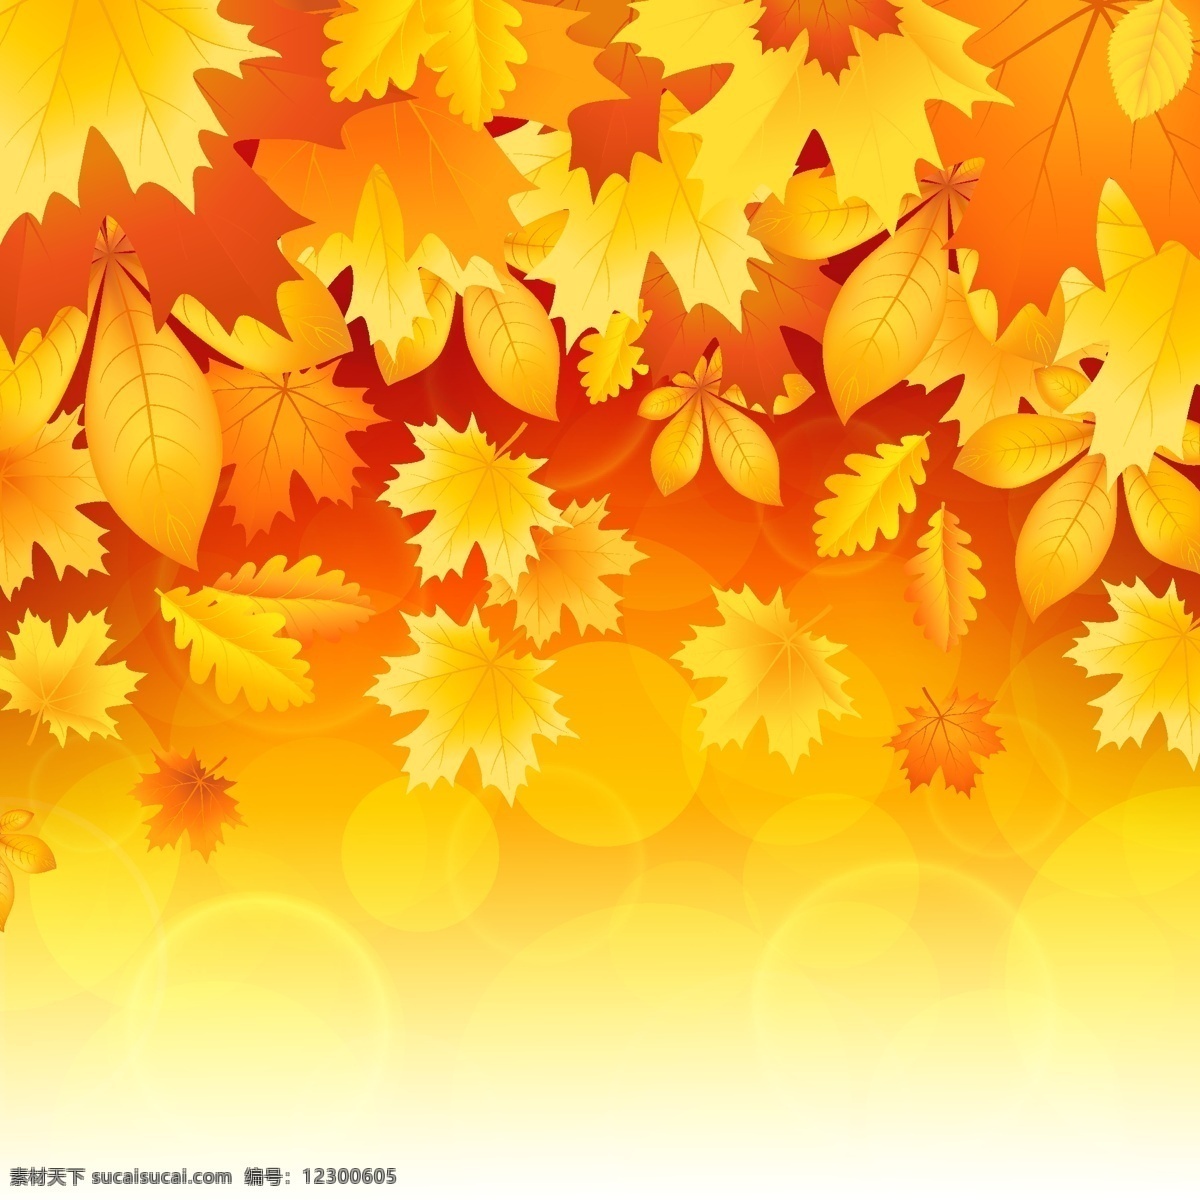 美丽 秋天 树叶 矢量 秋天的落叶 矢量植物 离开 psd秋天 矢量图 其他矢量图